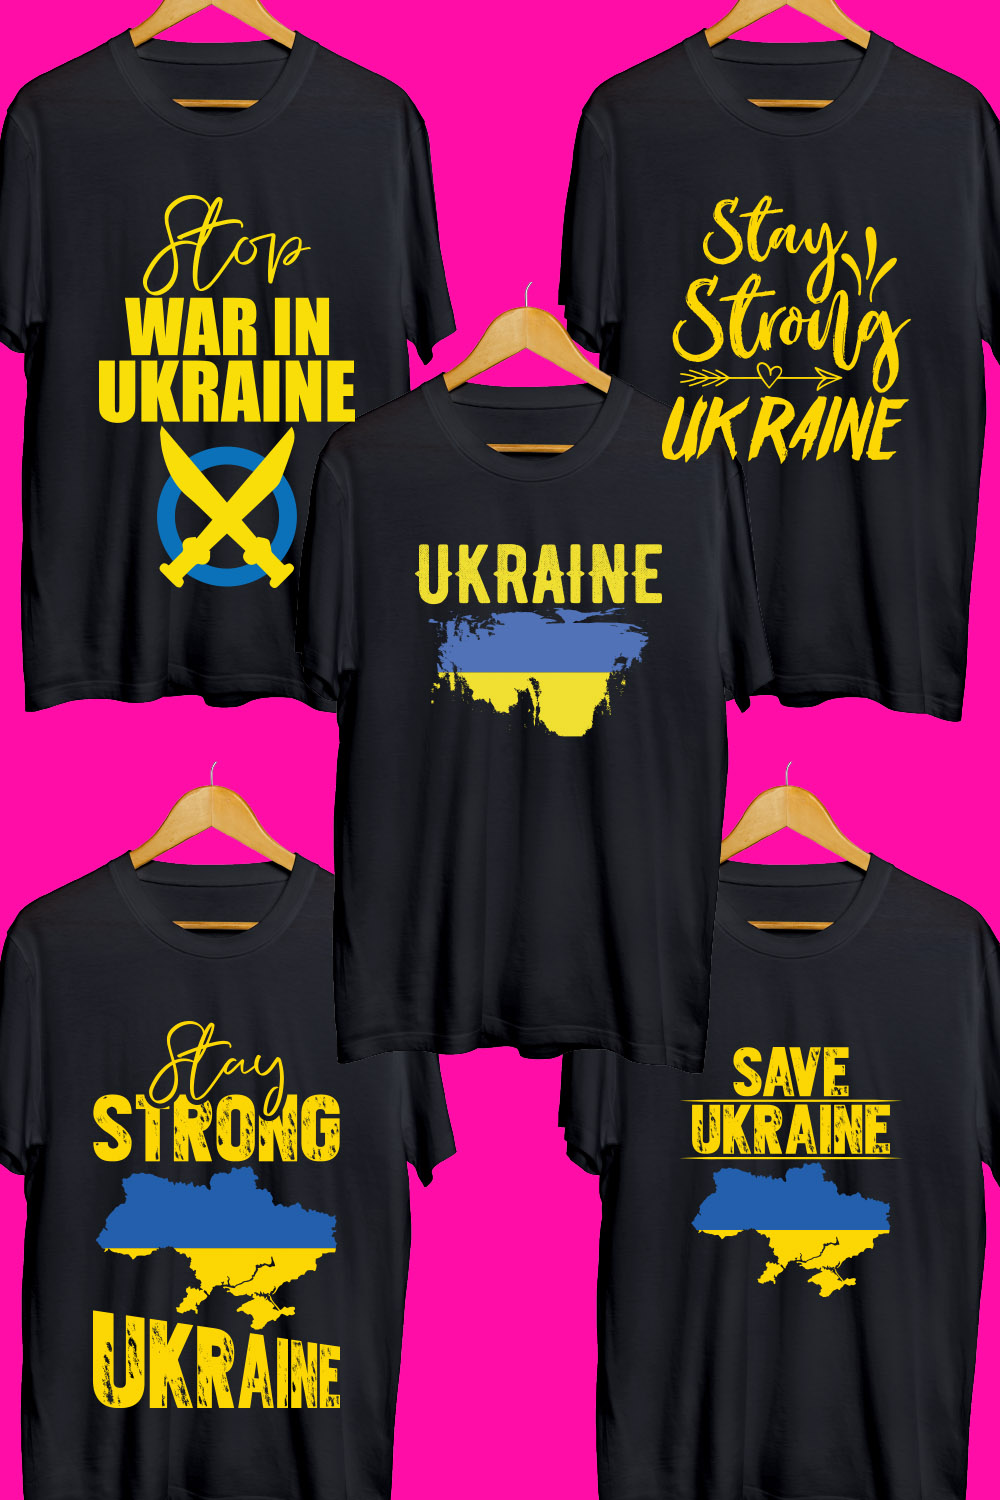 Ukraine SVG T Shirt Designs Bundle pinterest preview image.